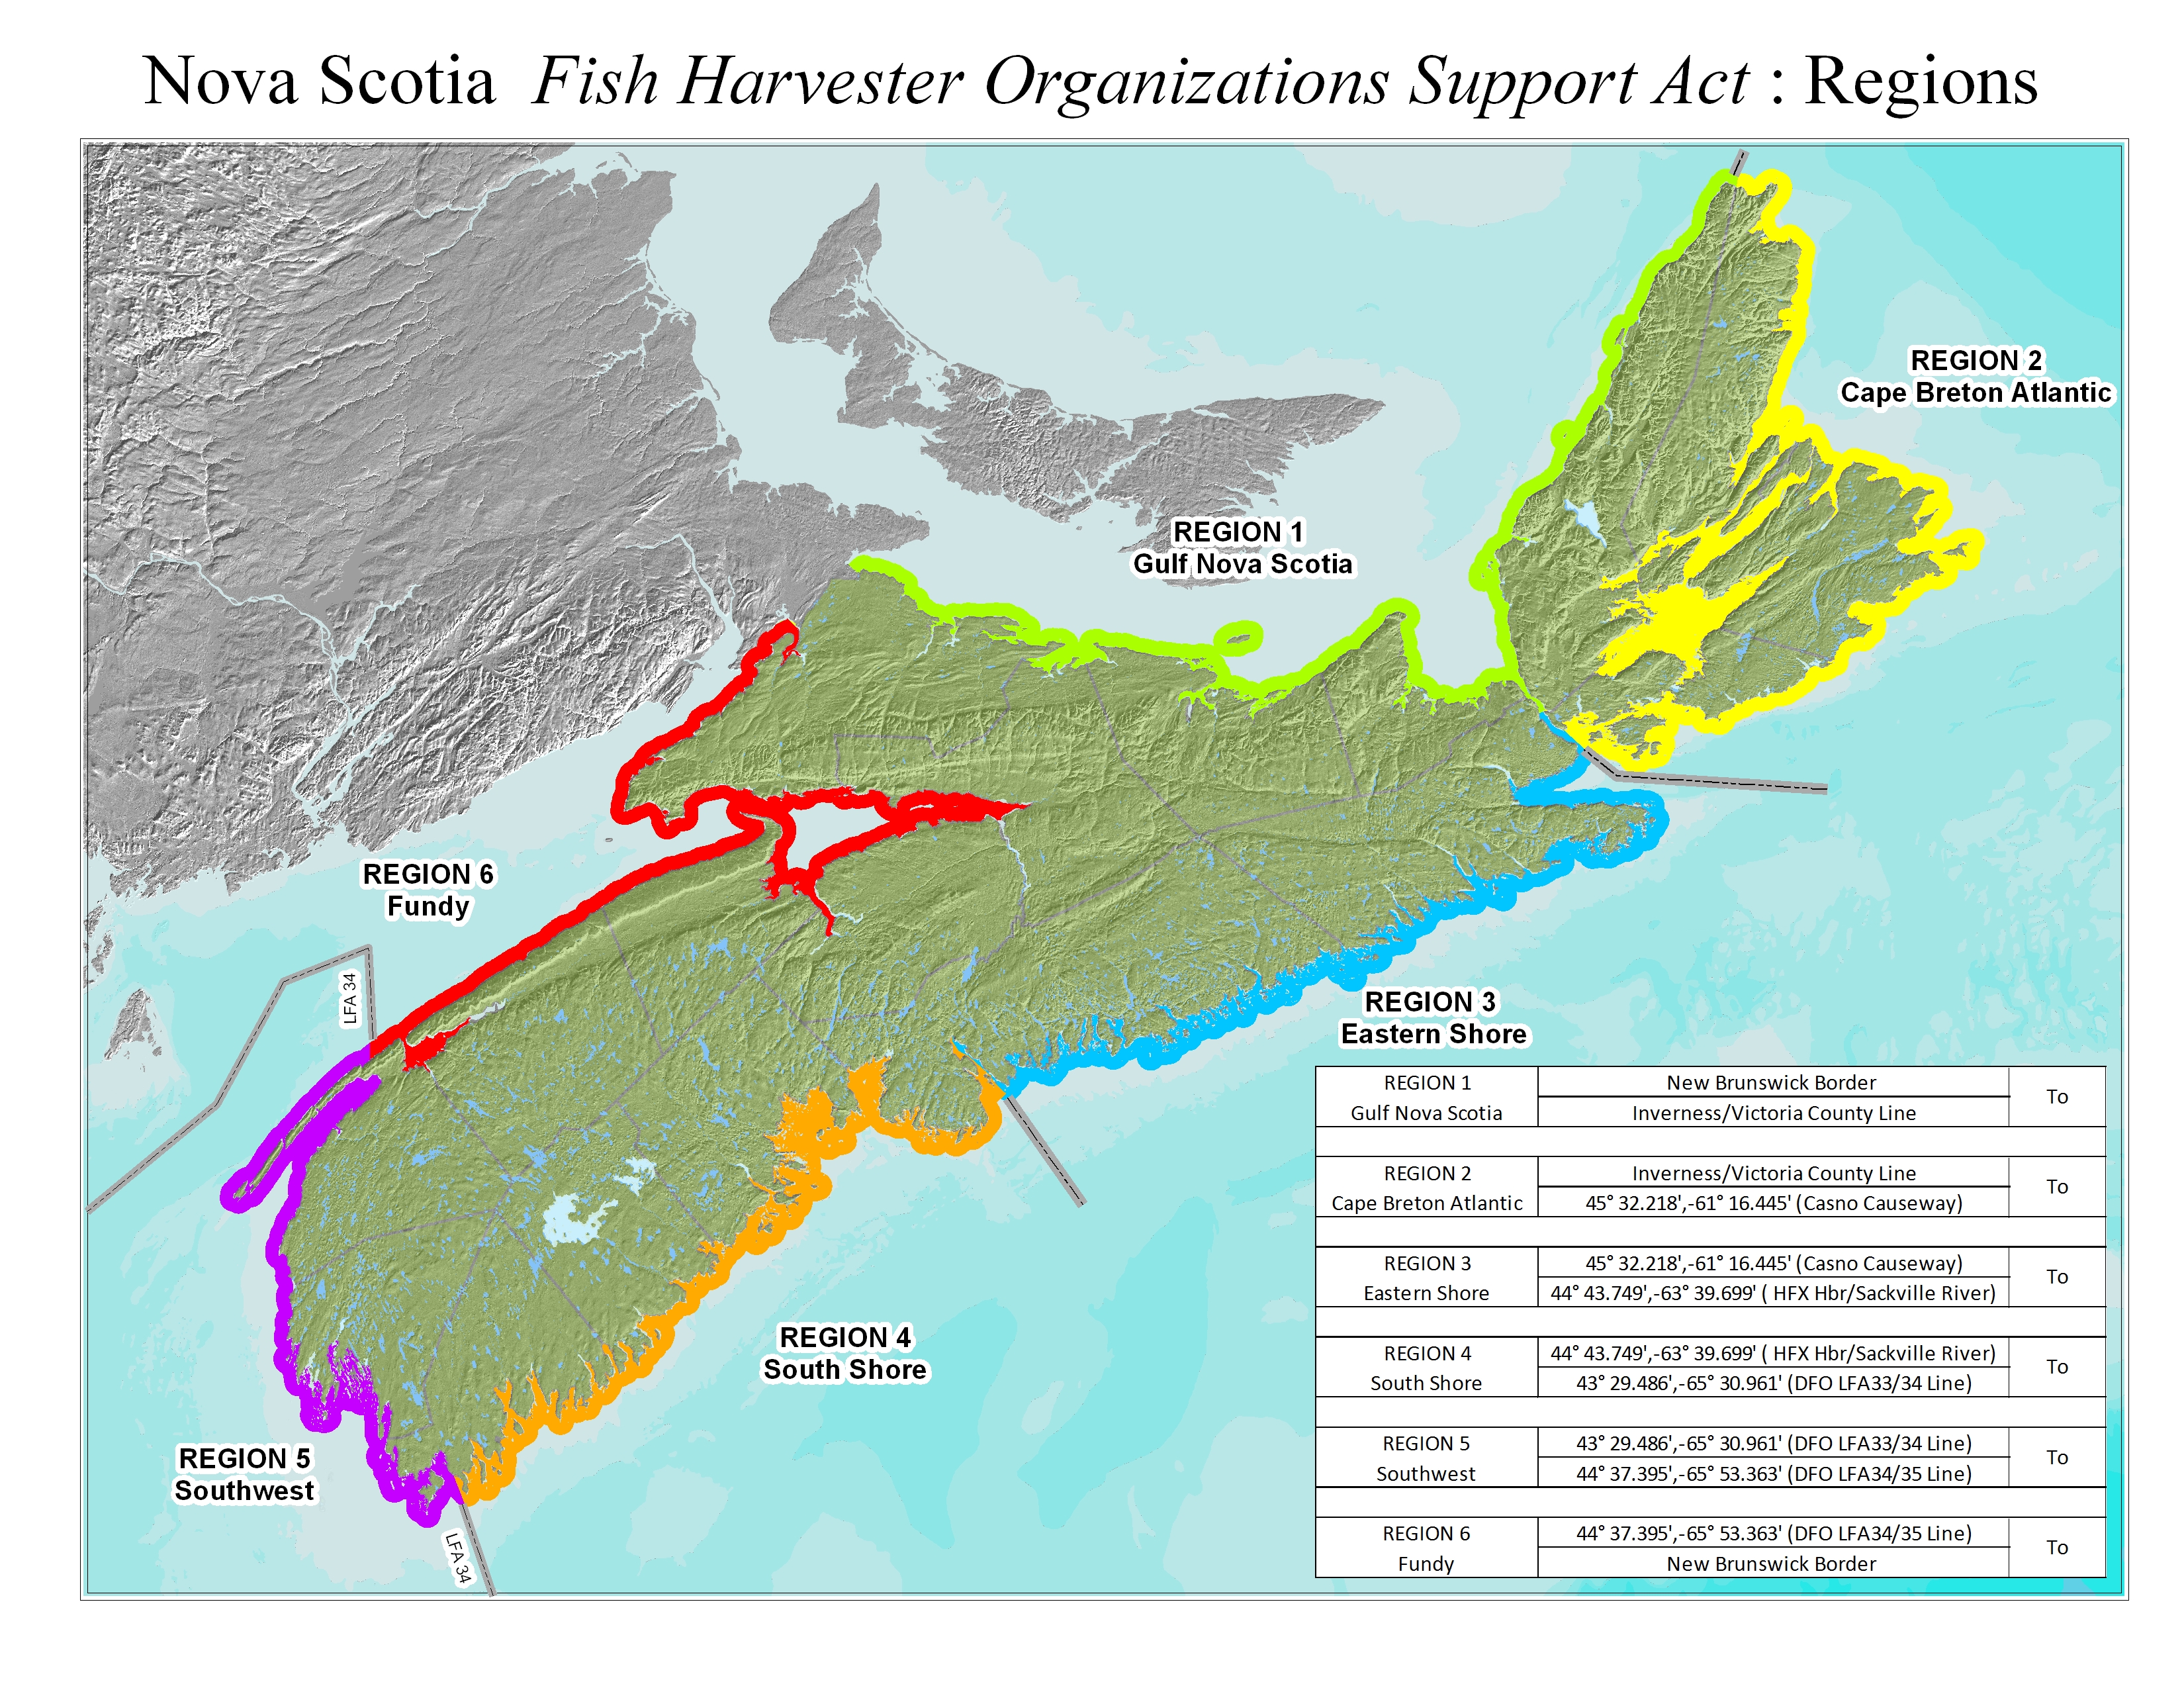 Nova Scotia Fish Harvester Organizations Support Act Regions